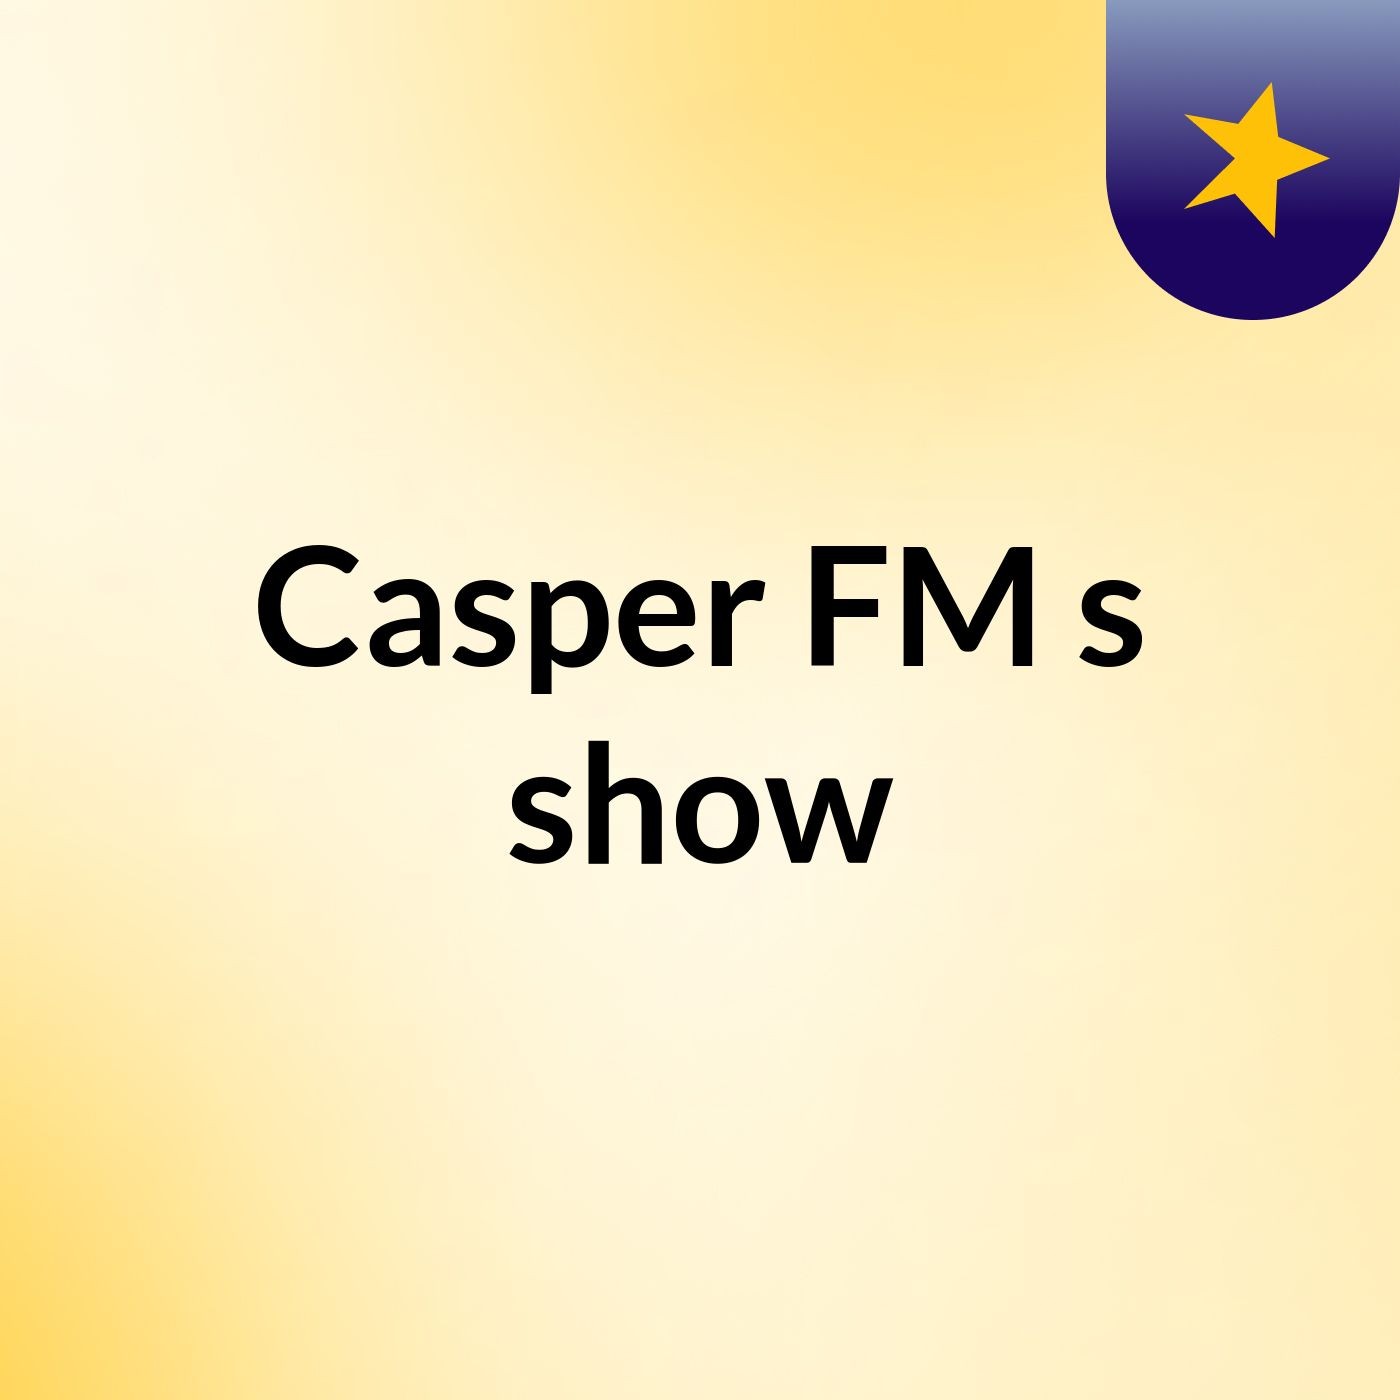 Casper FM's show